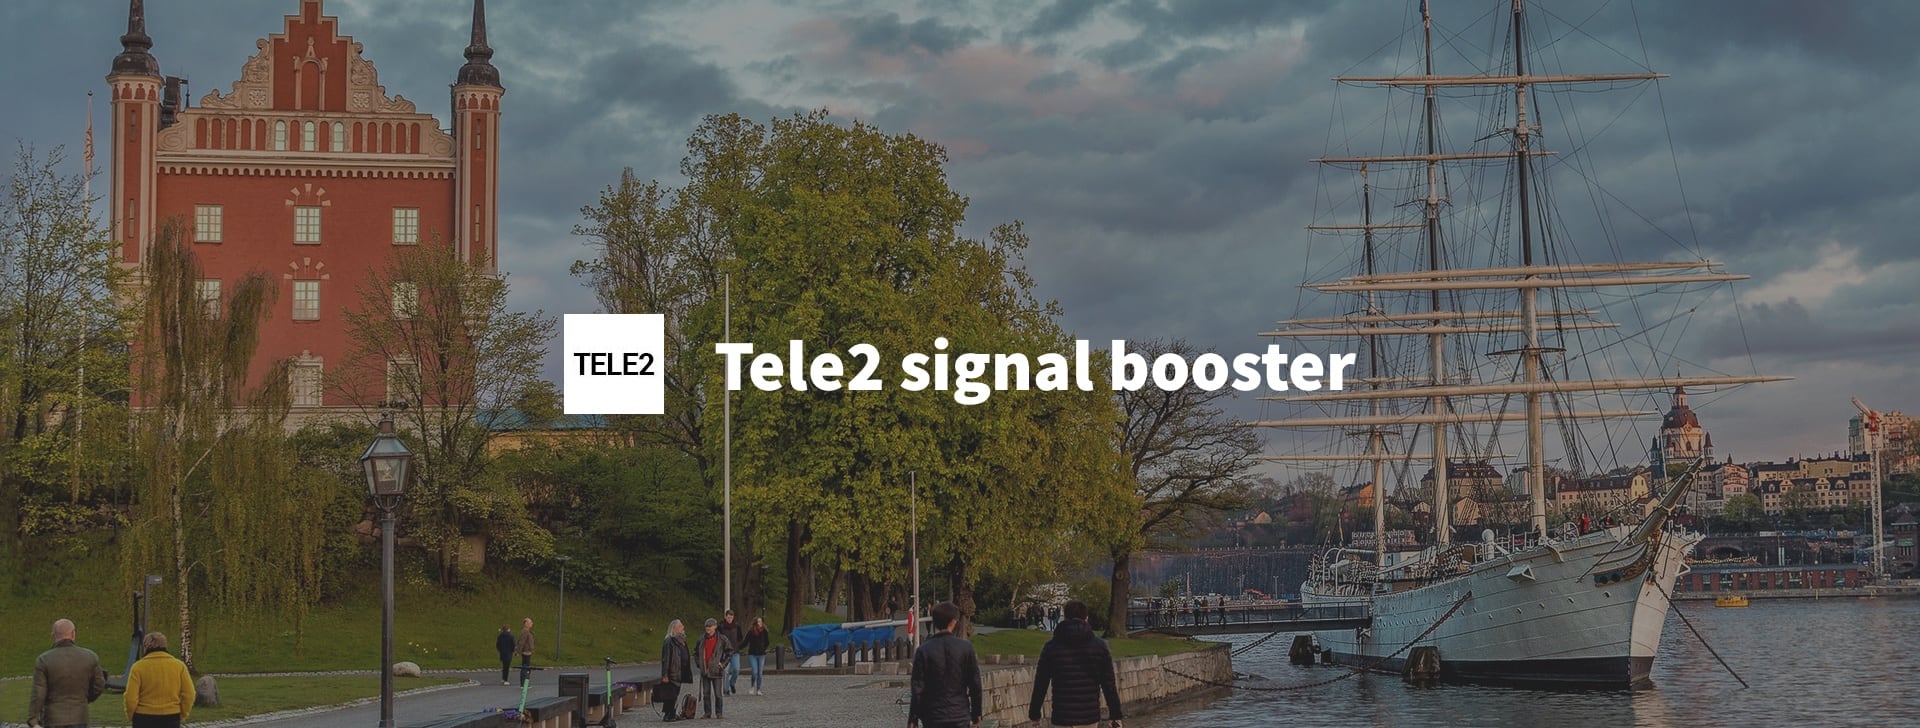 Tele2 mobile signal